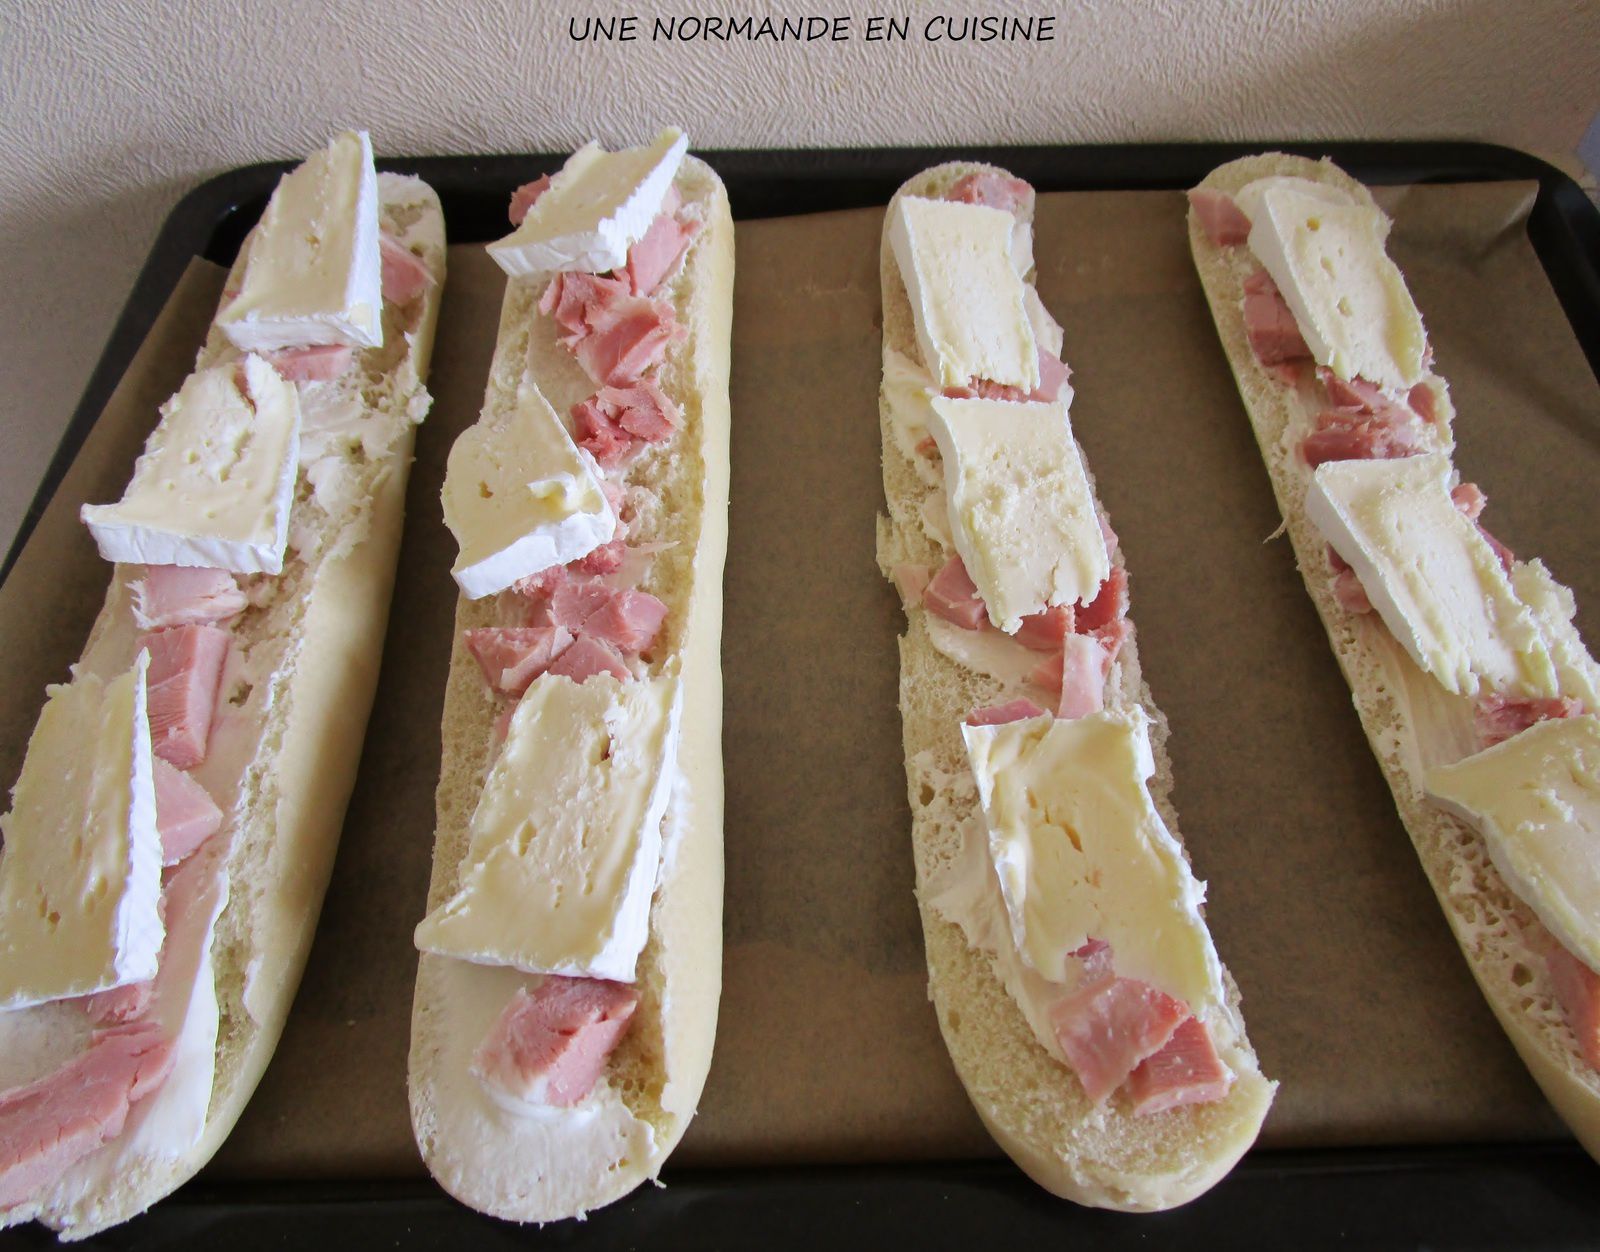 Baguettes gratinées au fromage - UNE NORMANDE EN CUISINE